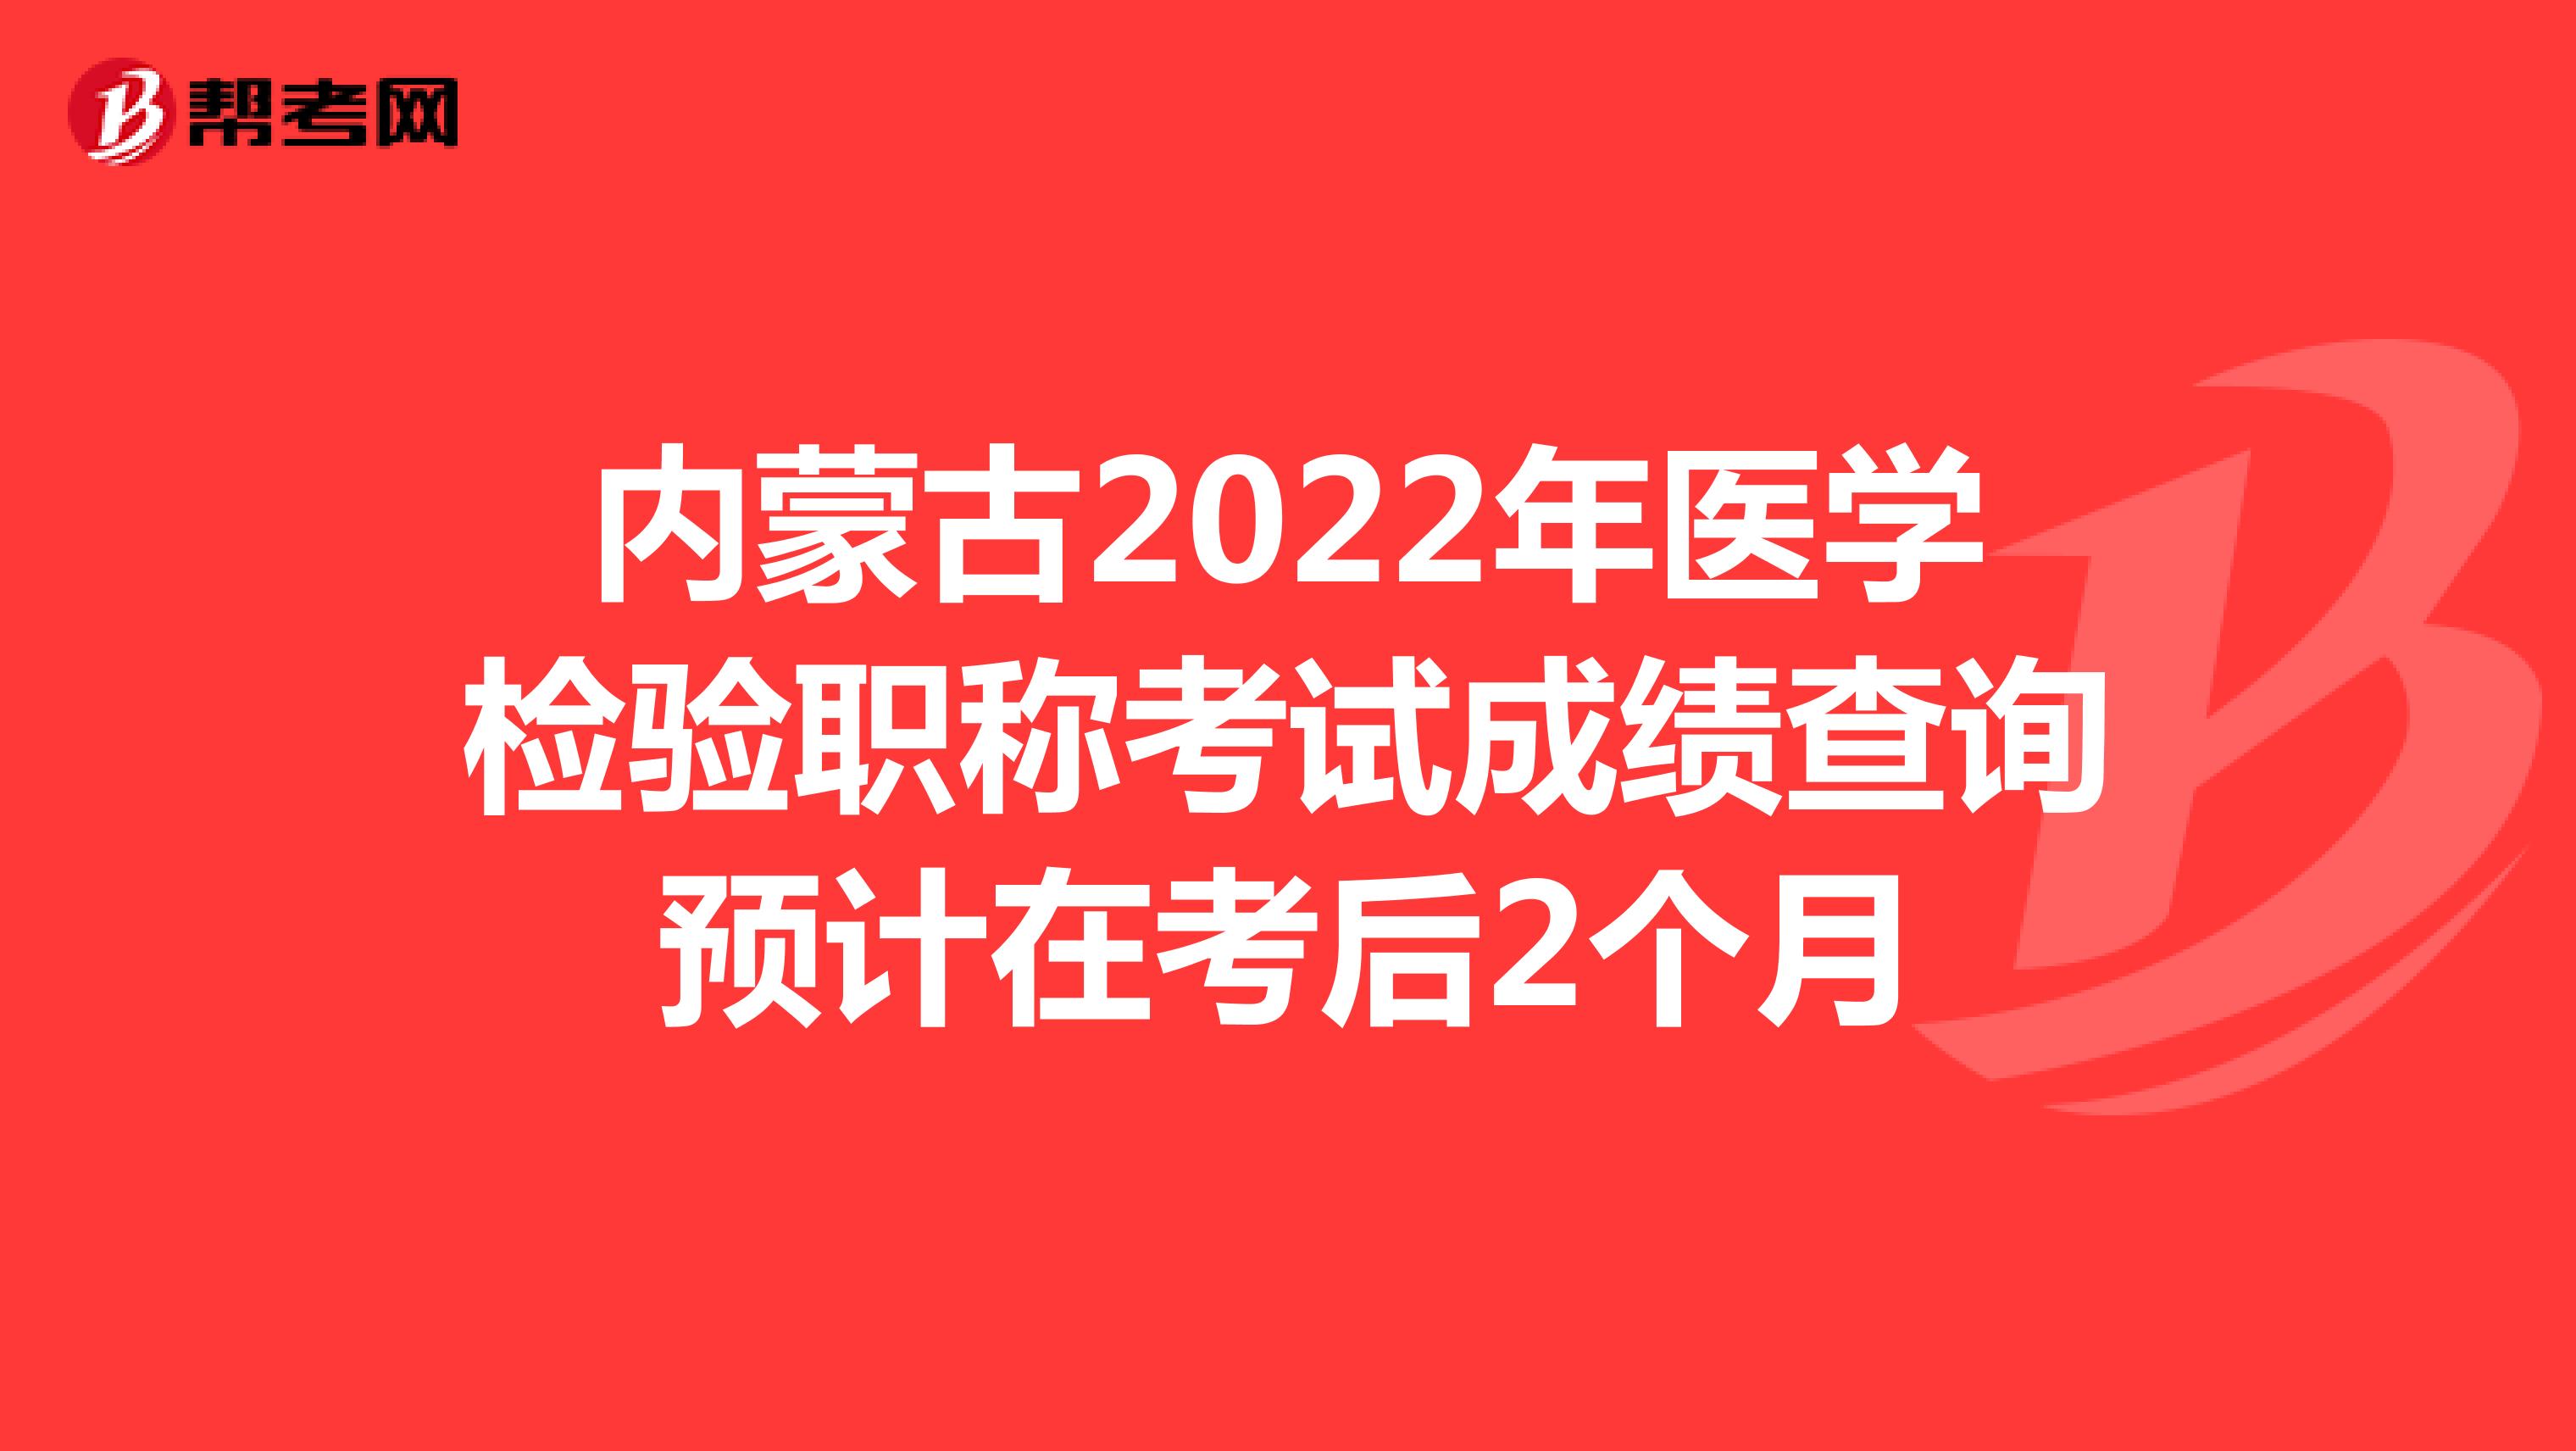 内蒙古2022年医学检验职称考试成绩查询预计在考后2个月